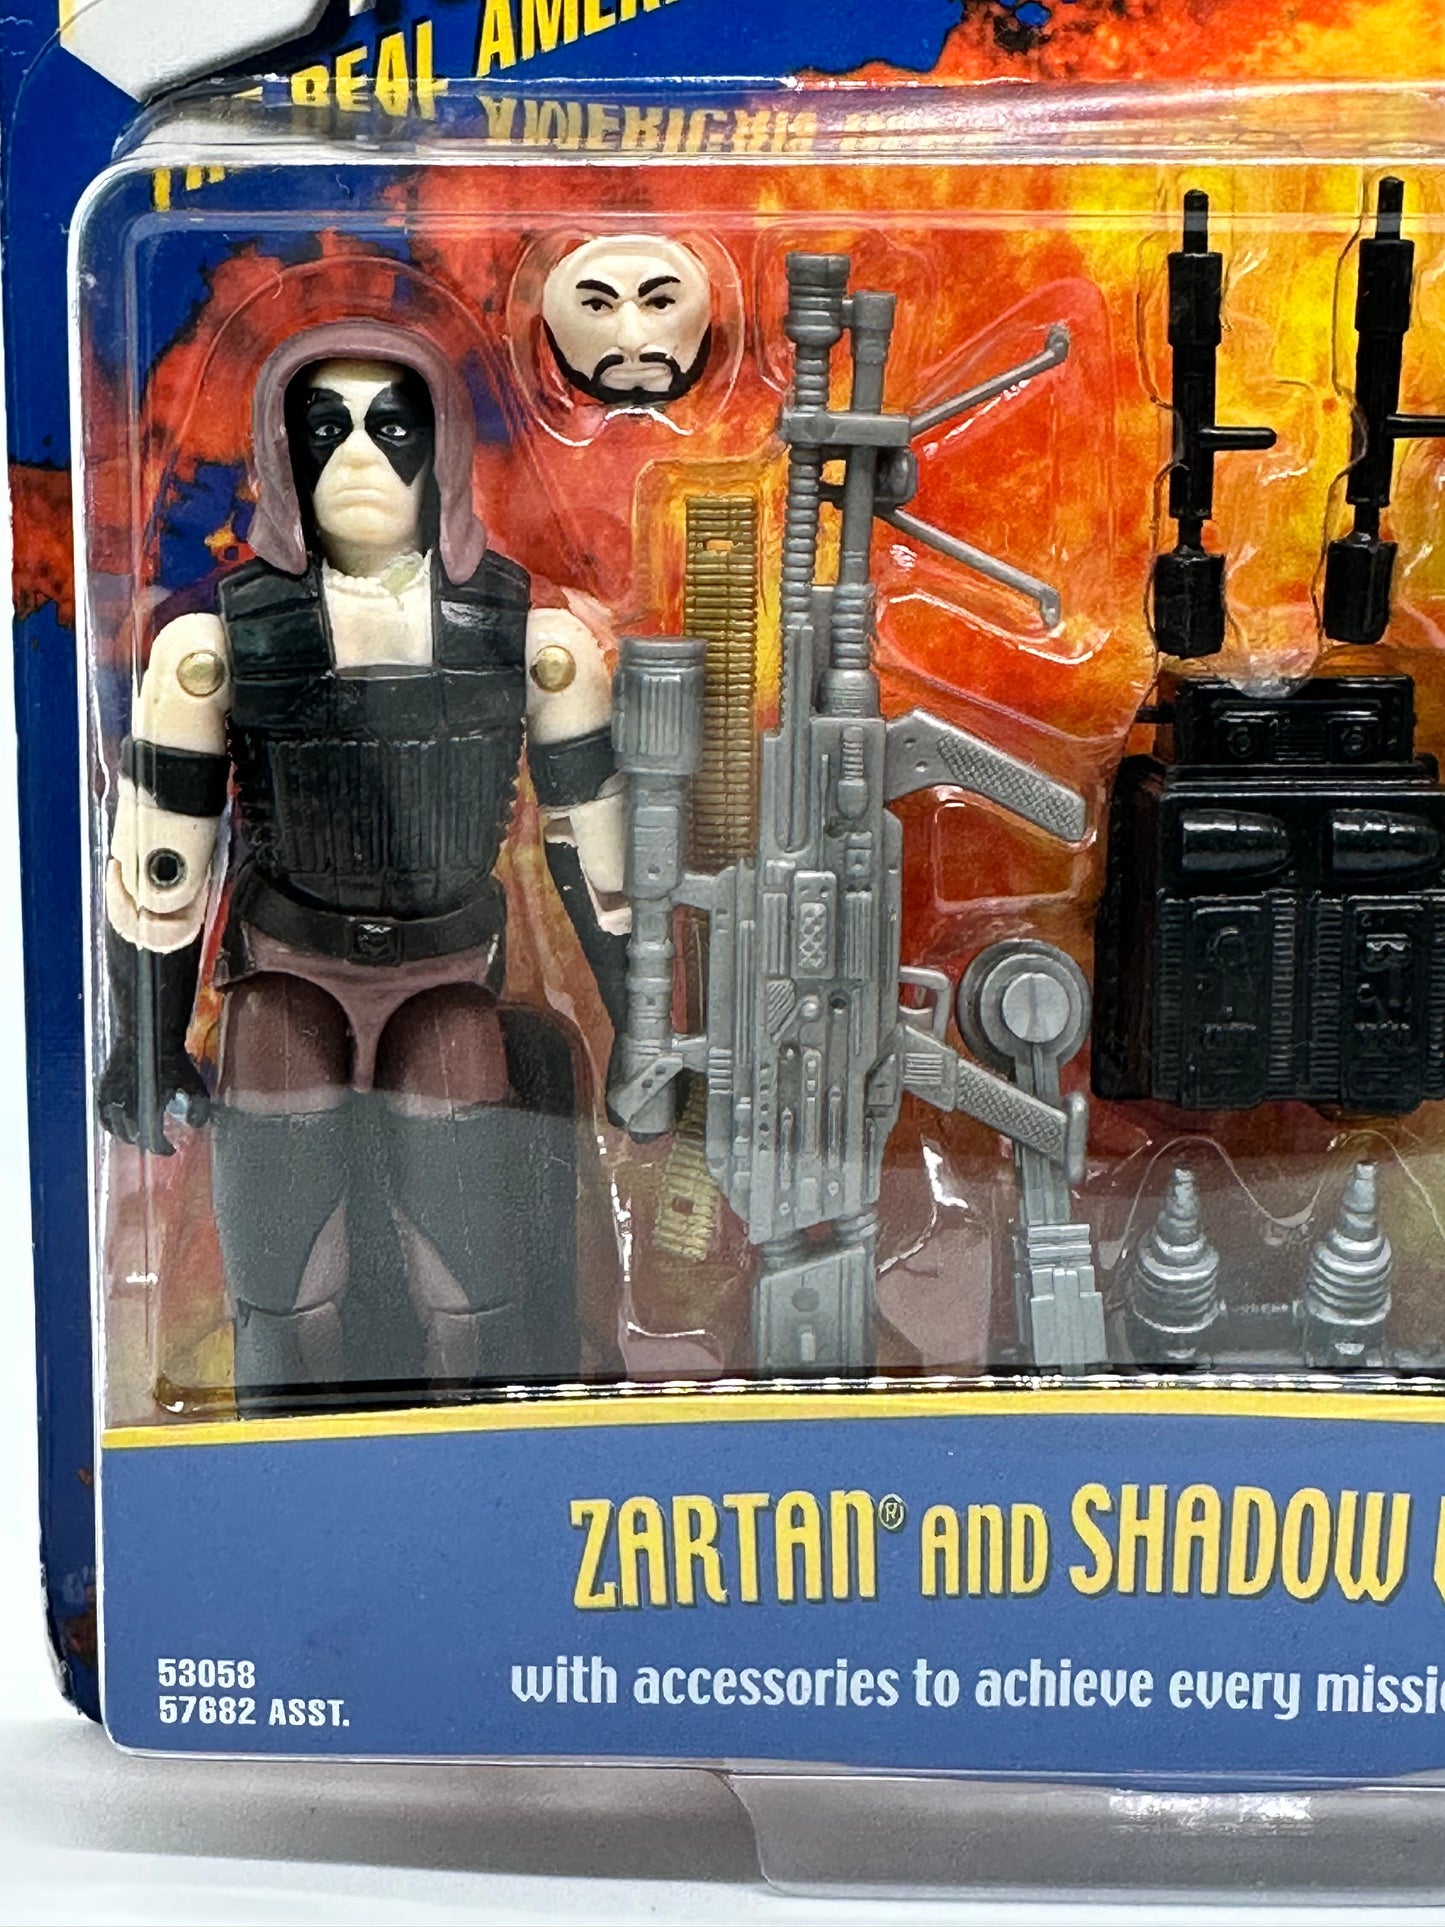 Collectors Set Zartan/Shadow Viper G.I.Joe Toy Figure